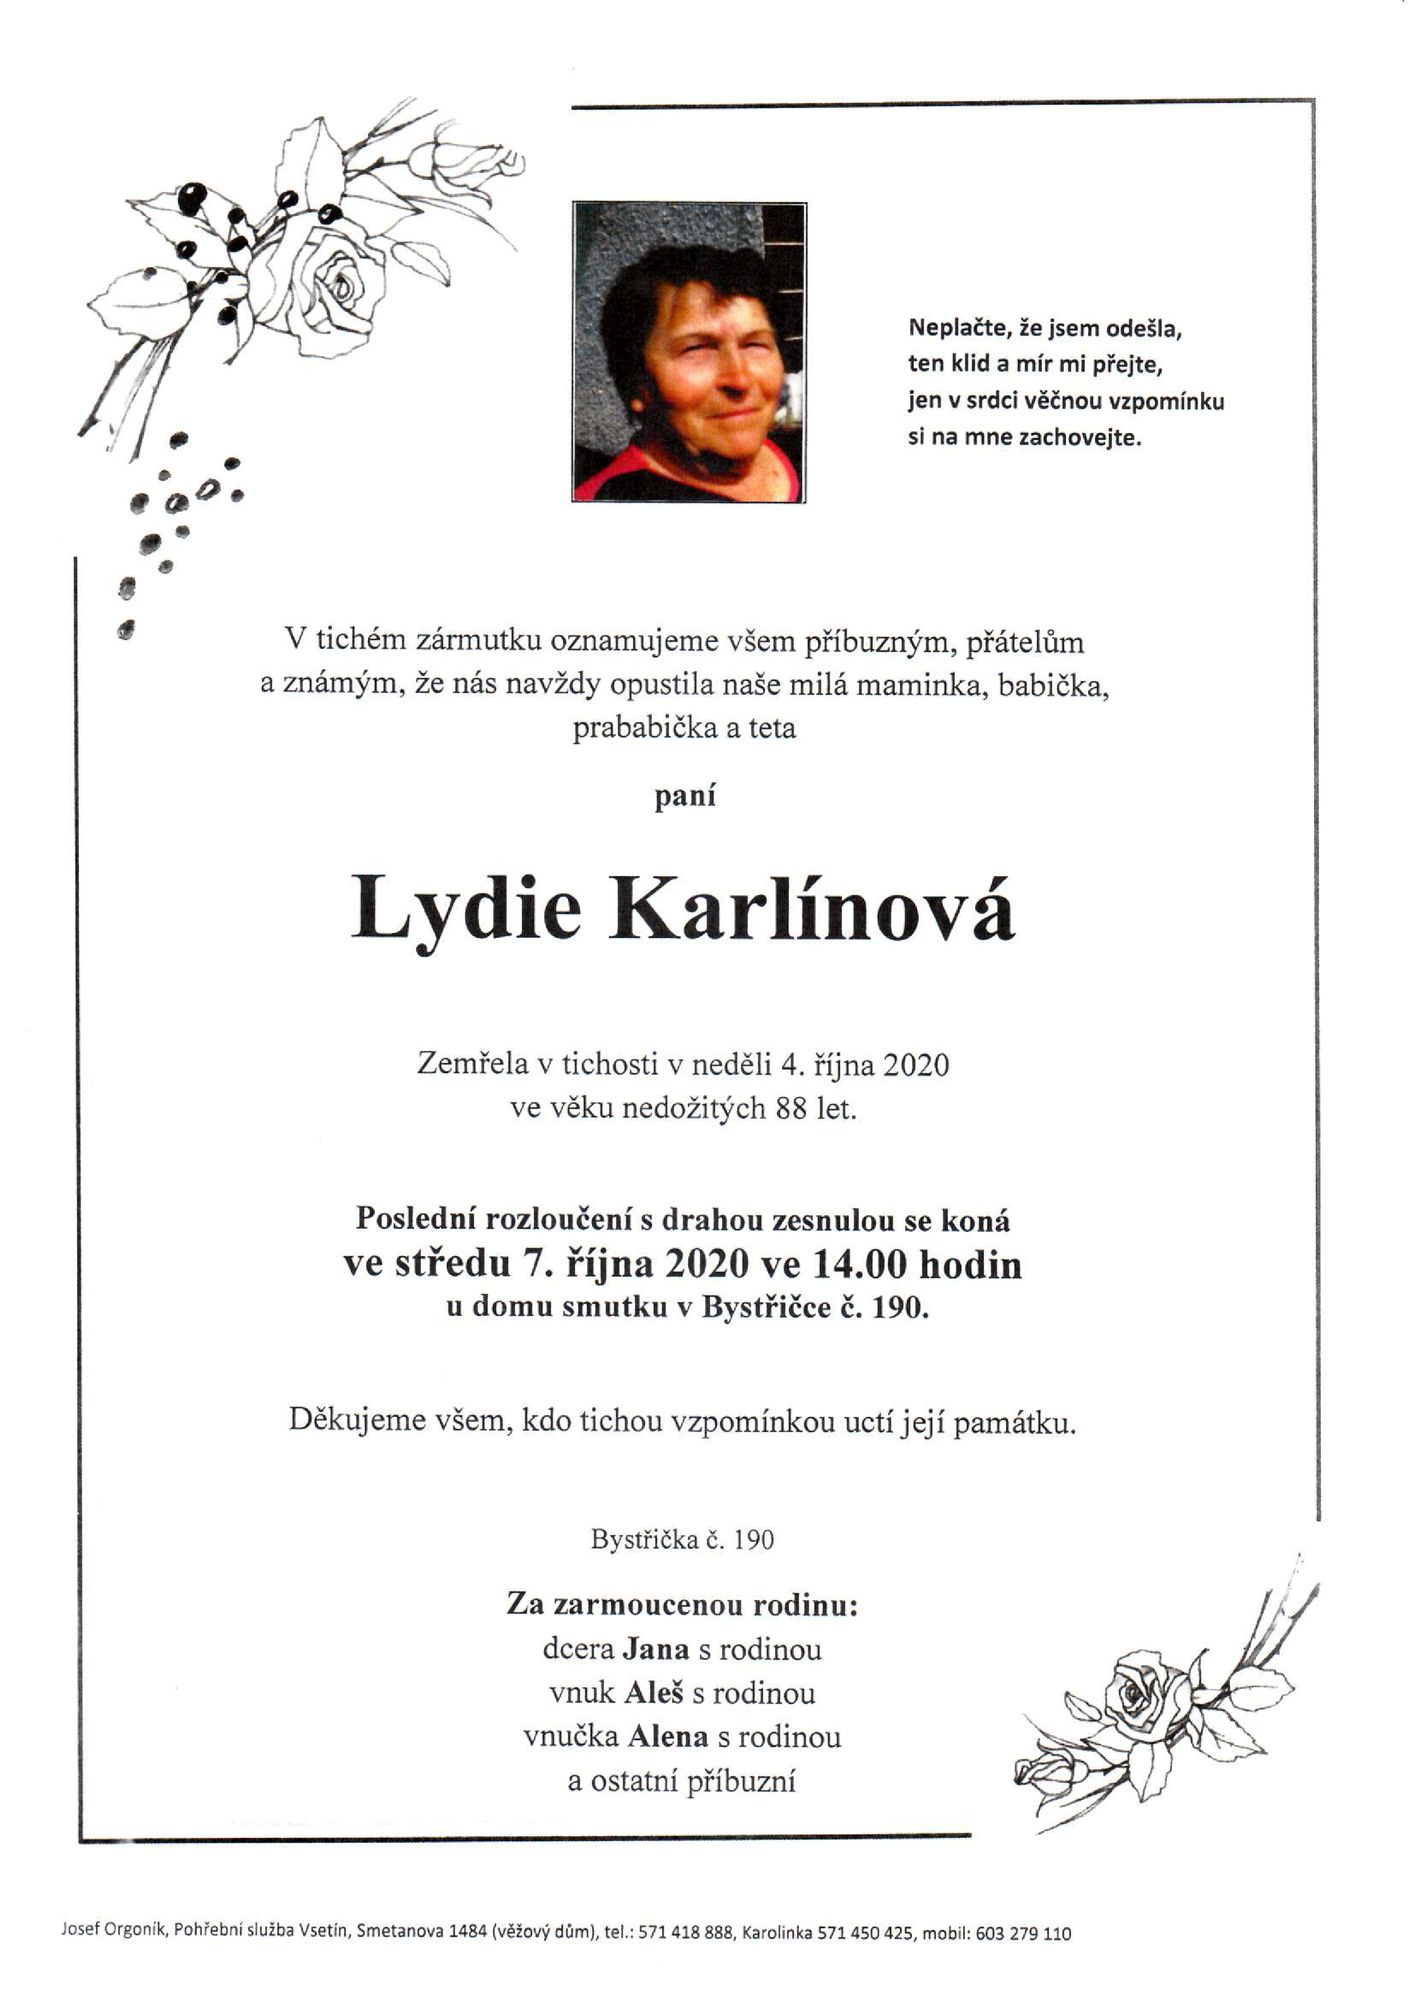 Lydie Karlínová